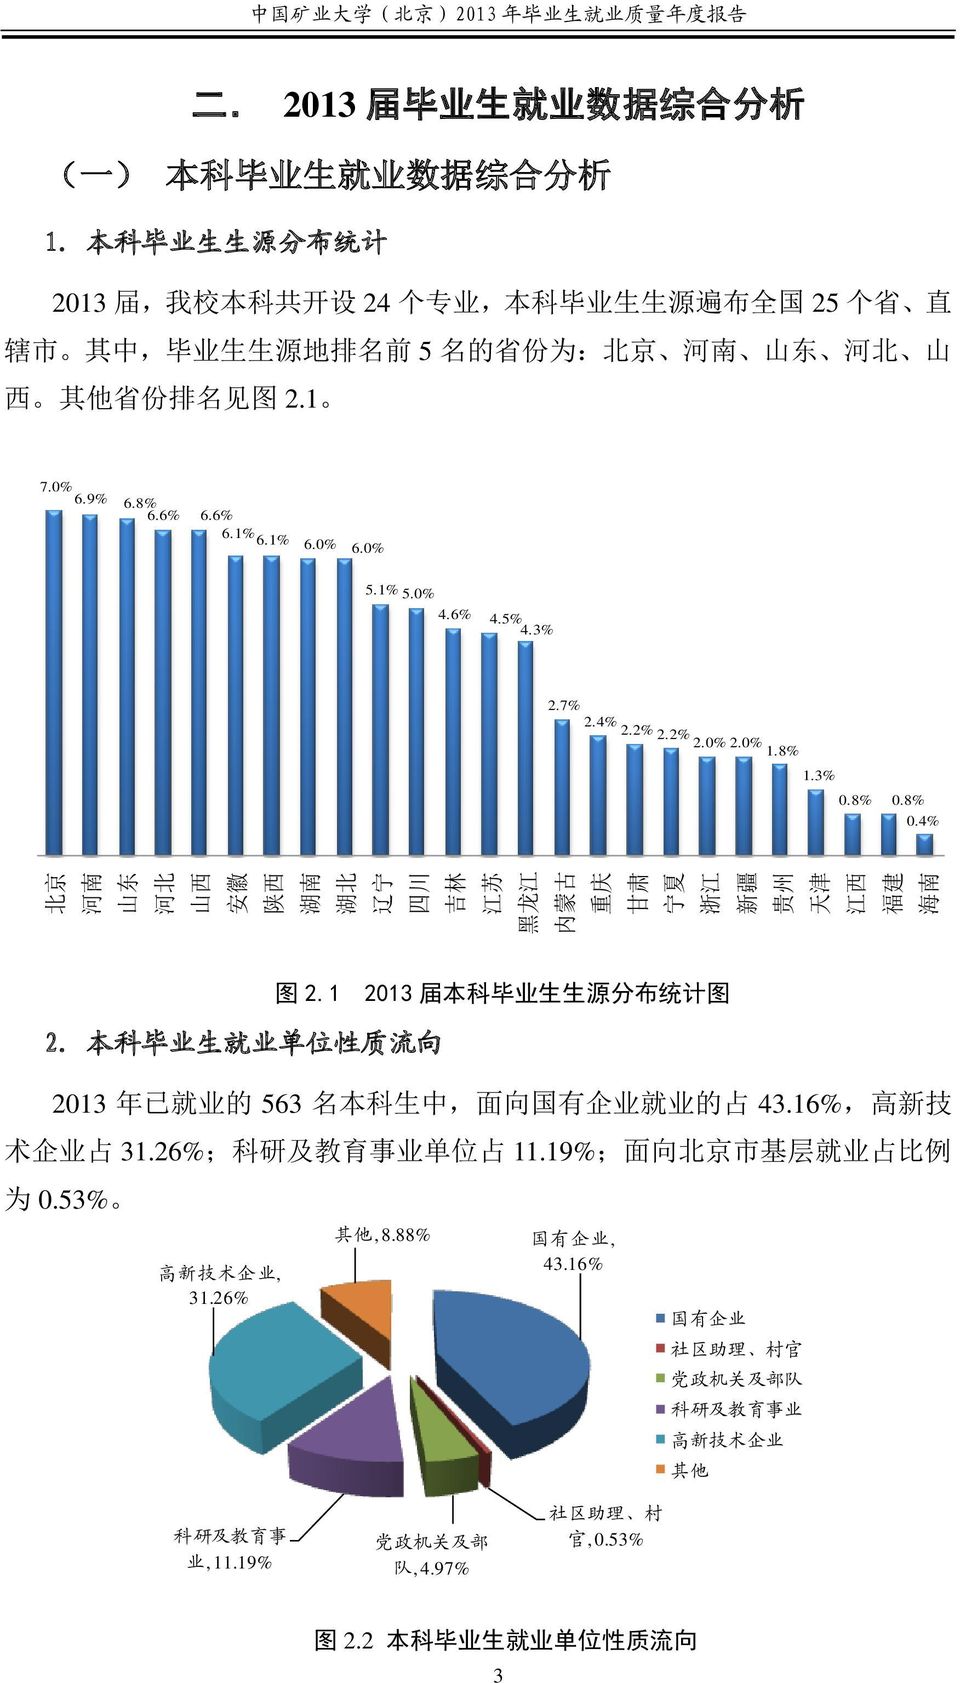 本 科 毕 业 生 生 源 分 布 统 计 2013 届, 我 校 本 科 共 开 设 24 个 专 业, 本 科 毕 业 生 生 源 遍 布 全 国 25 个 省 直 辖 市 其 中, 毕 业 生 生 源 地 排 名 前 5 名 的 省 份 为 : 北 京 河 南 山 东 河 北 山 西 其 他 省 份 排 名 见 图 2.1 7.0% 6.9% 6.8%6.6% 6.6% 6.1% 6.